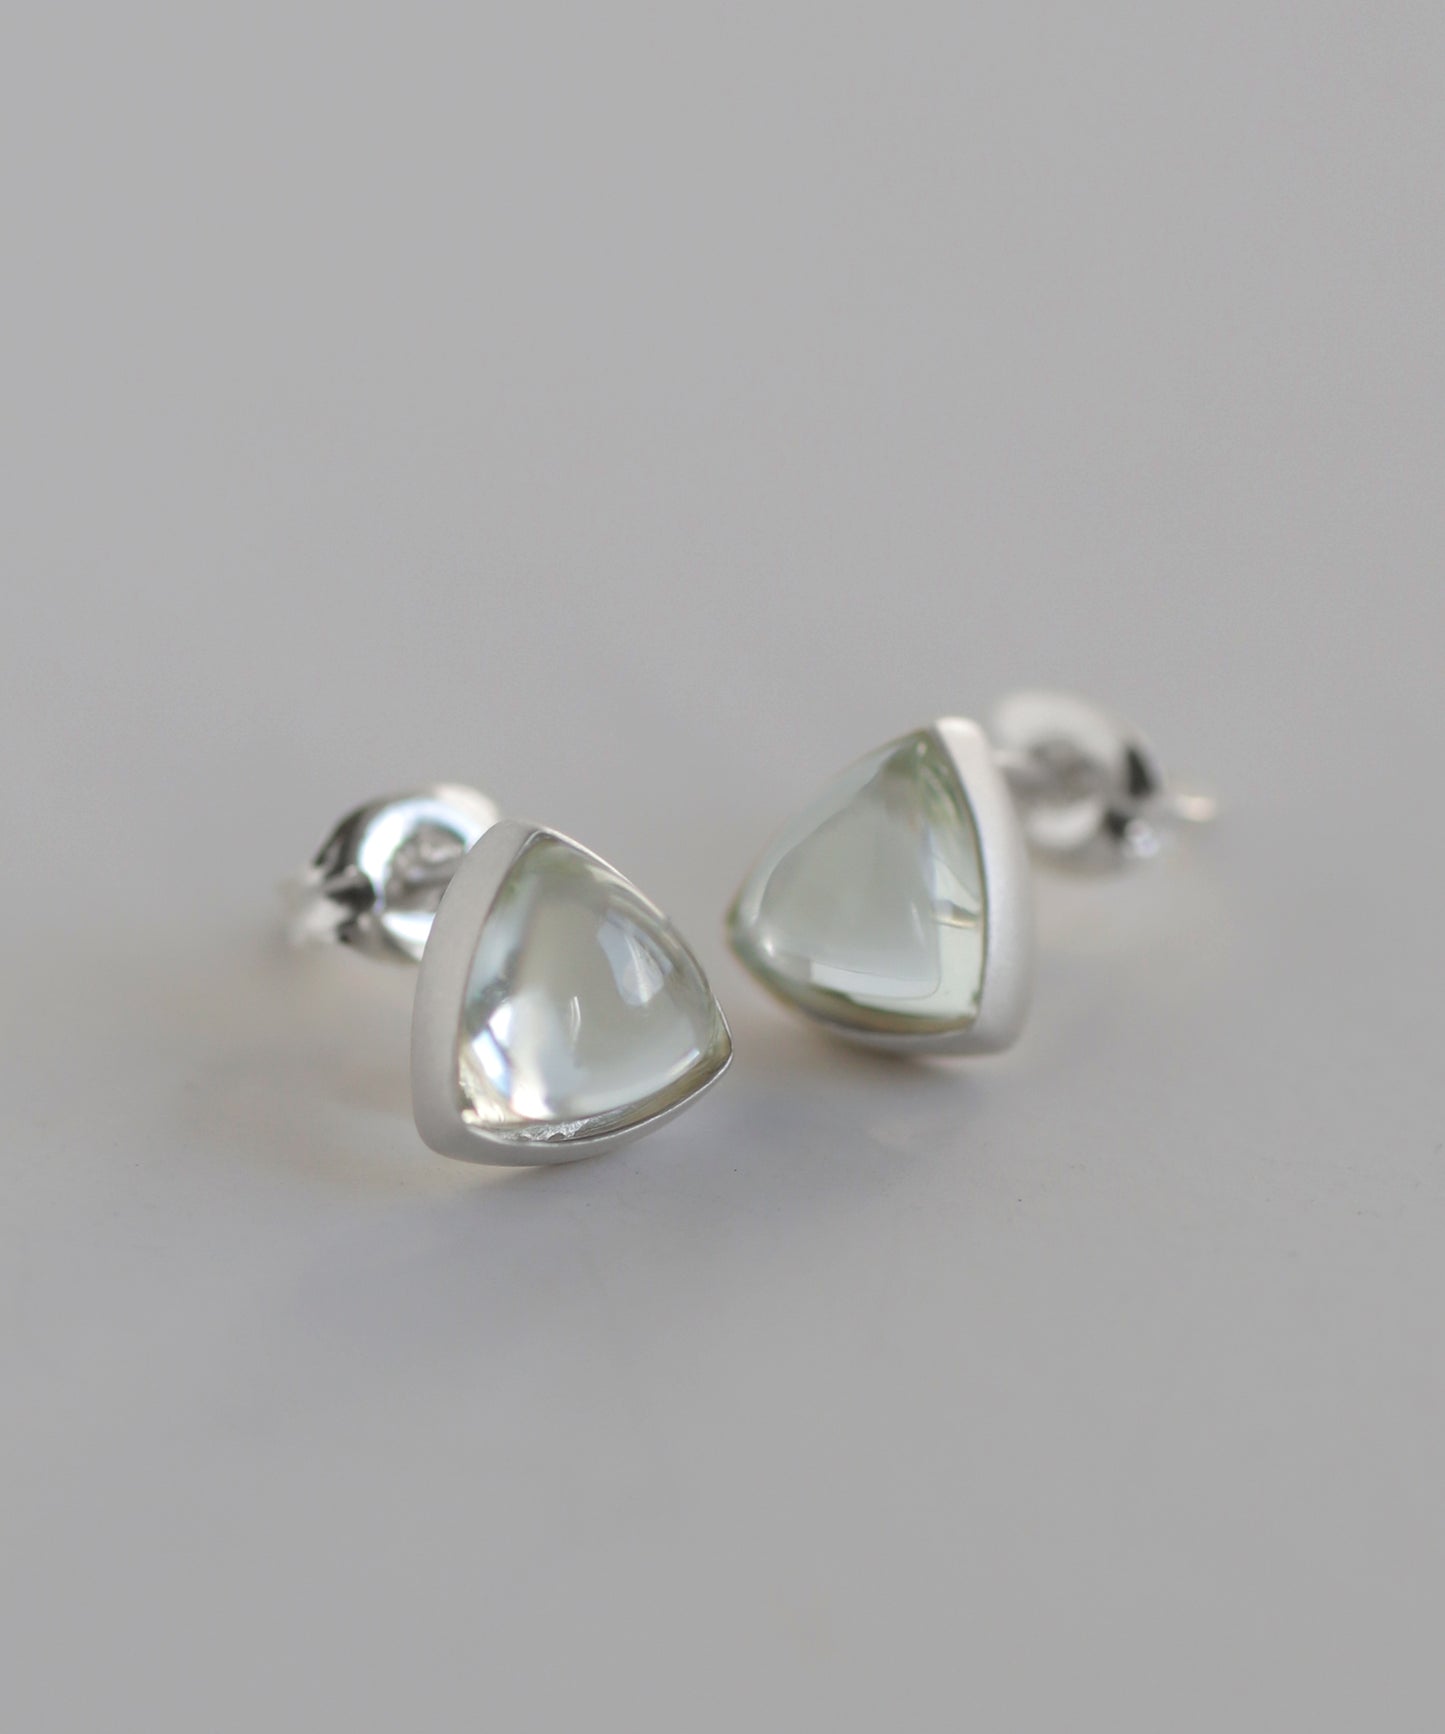 Gemstone Triangle Earrings